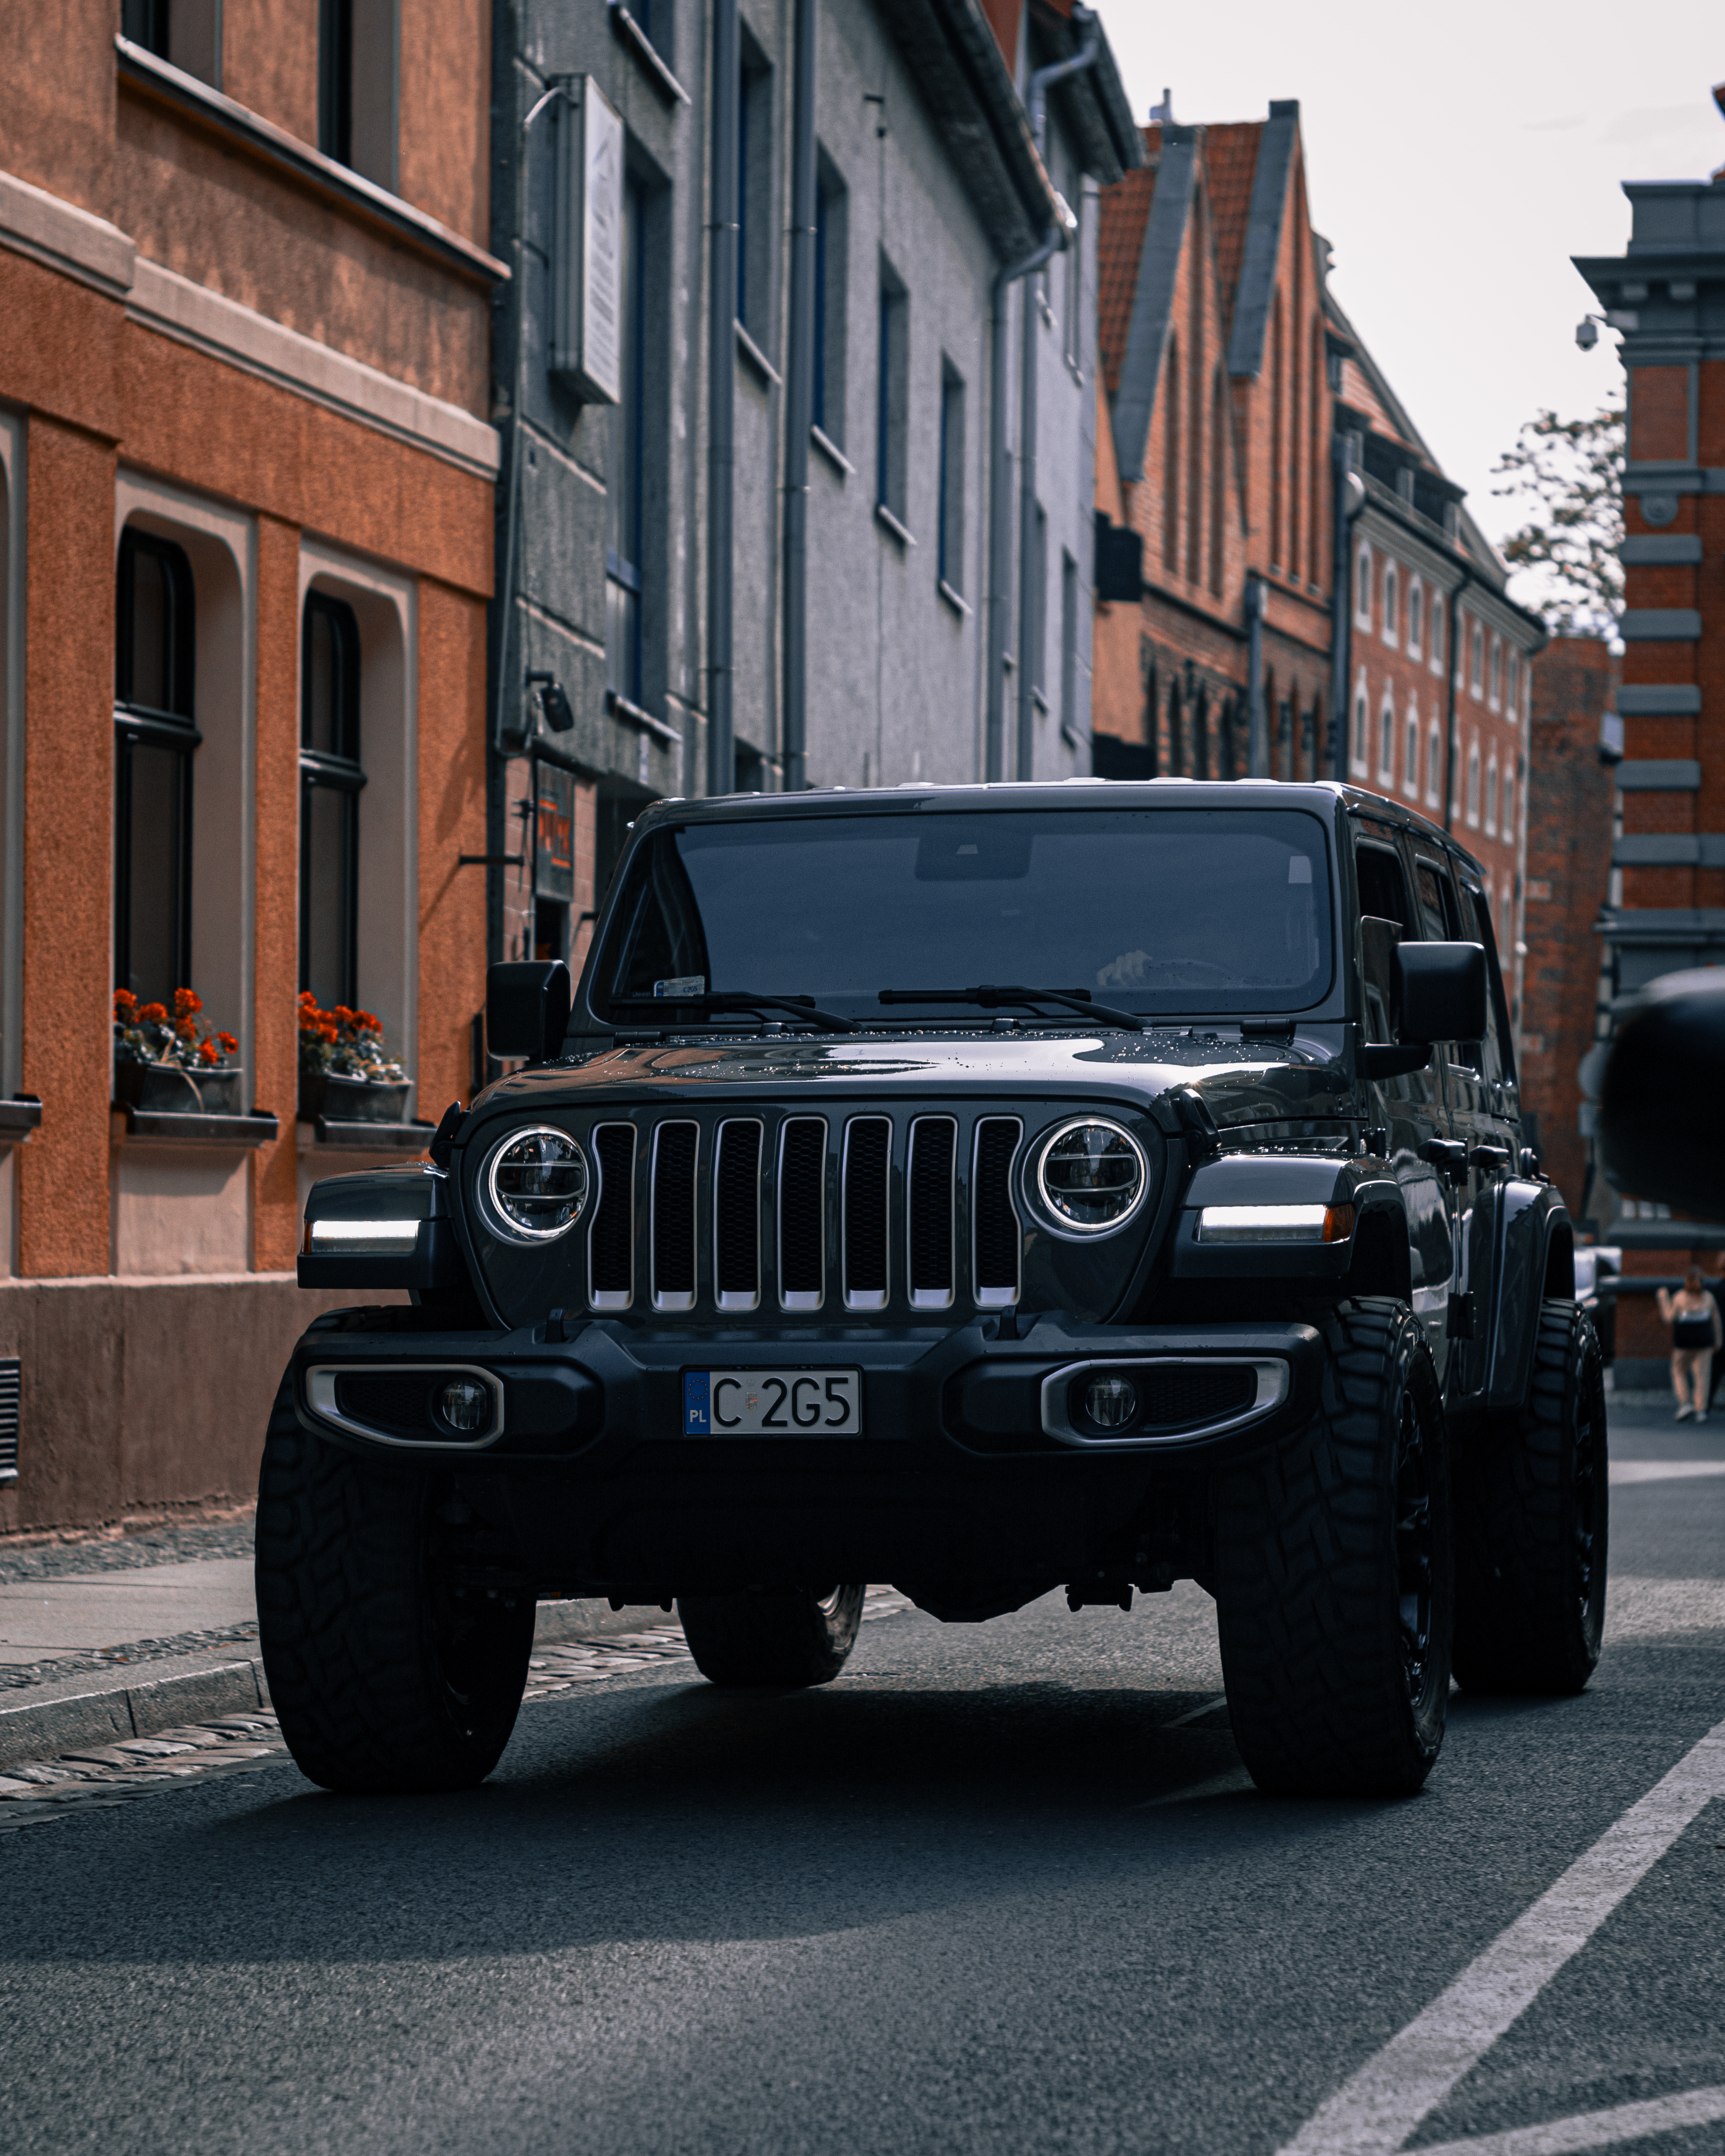 Czarny samochod marki jeep